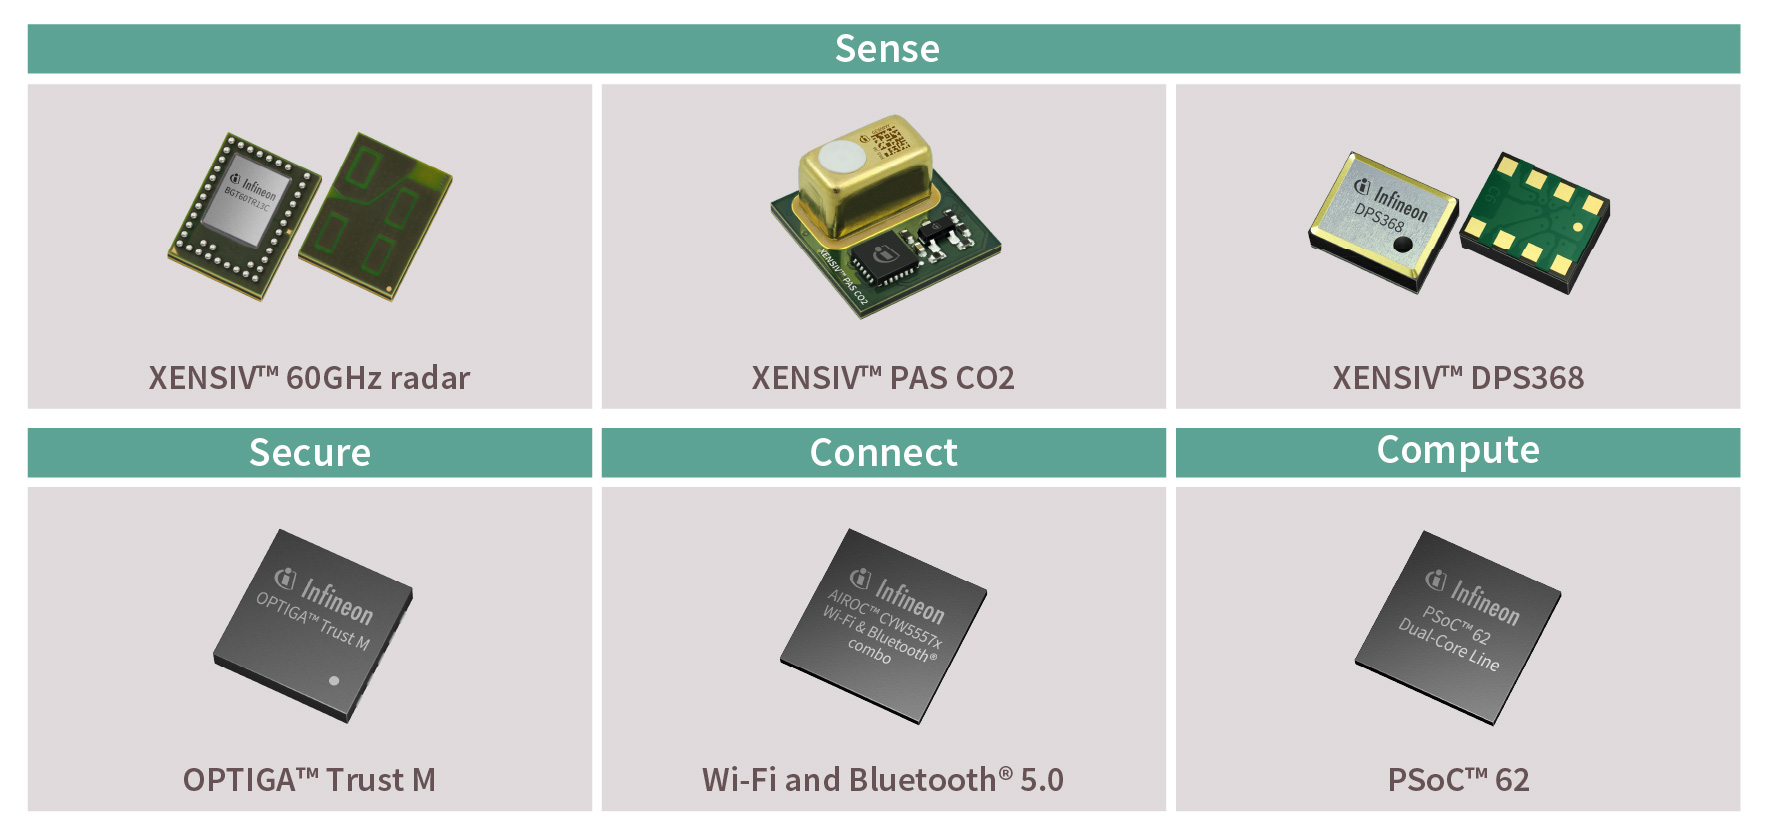 图3. 英飞凌 XENSIV™ 连接传感器套件中的组件.jpg